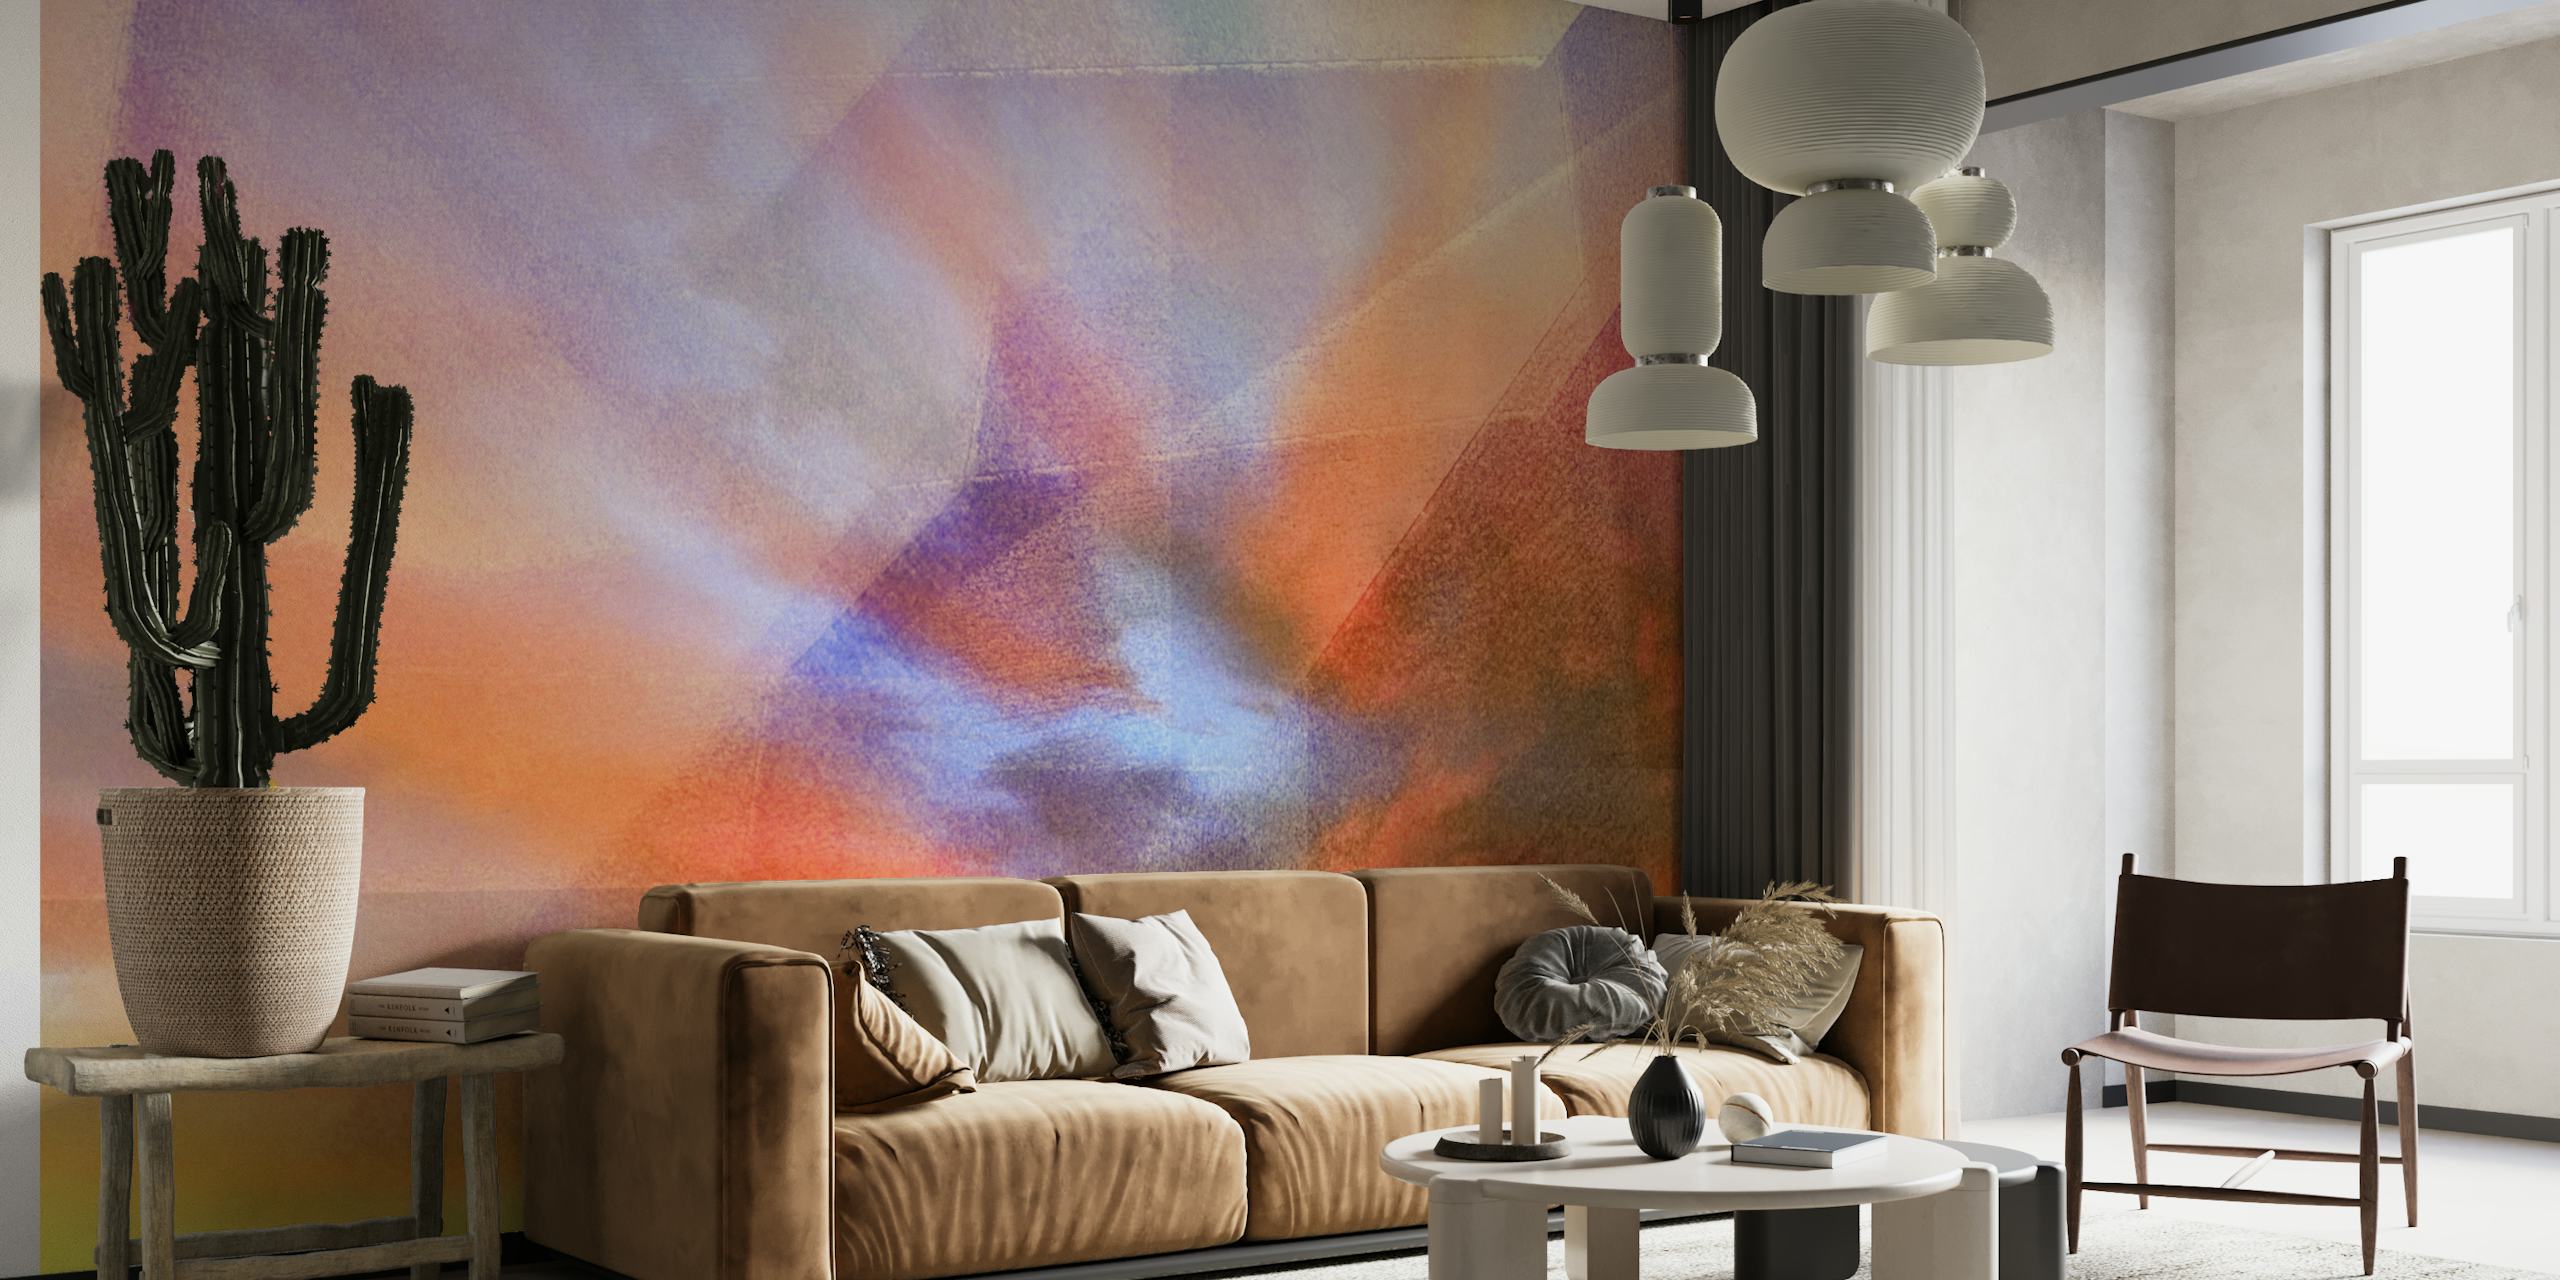 Abstrakt æterisk Eden Clouds-vægmaleri med varme appelsiner, livlige lyserøde farver og kølige blues